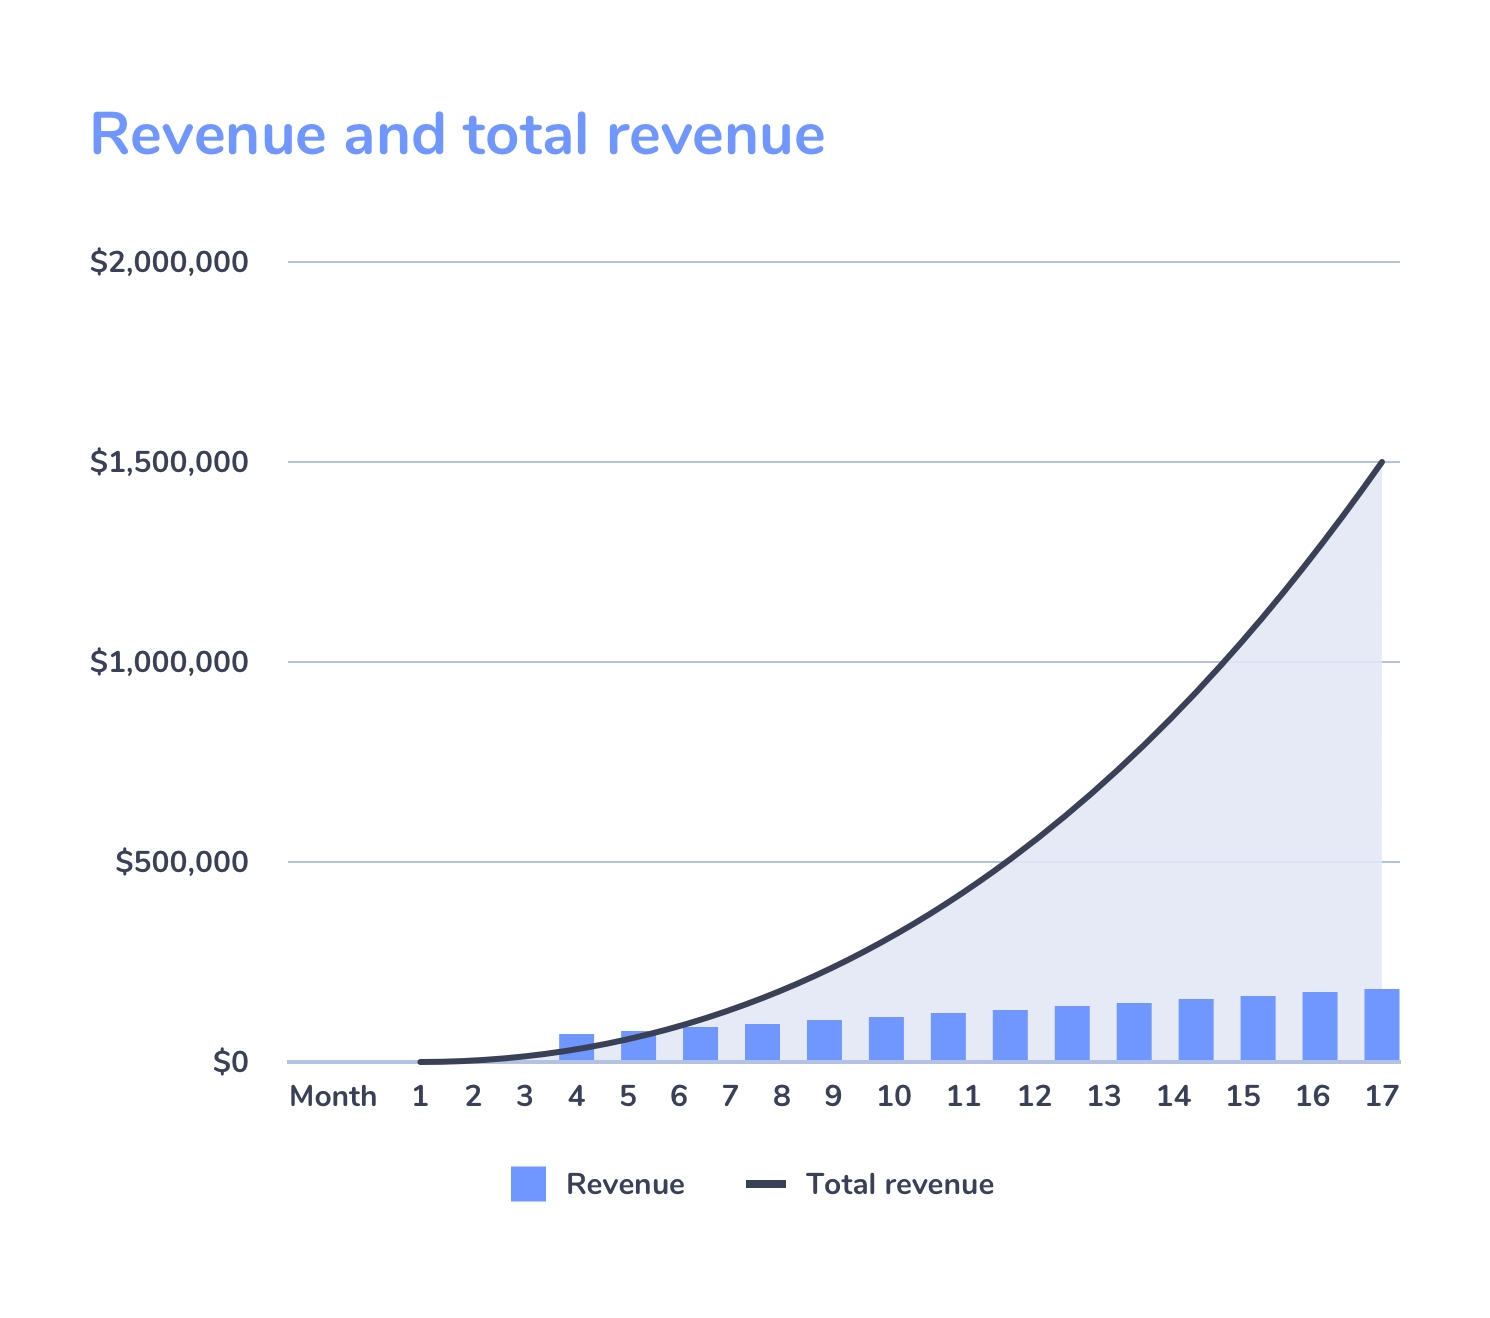 Revenue and total revenue graph